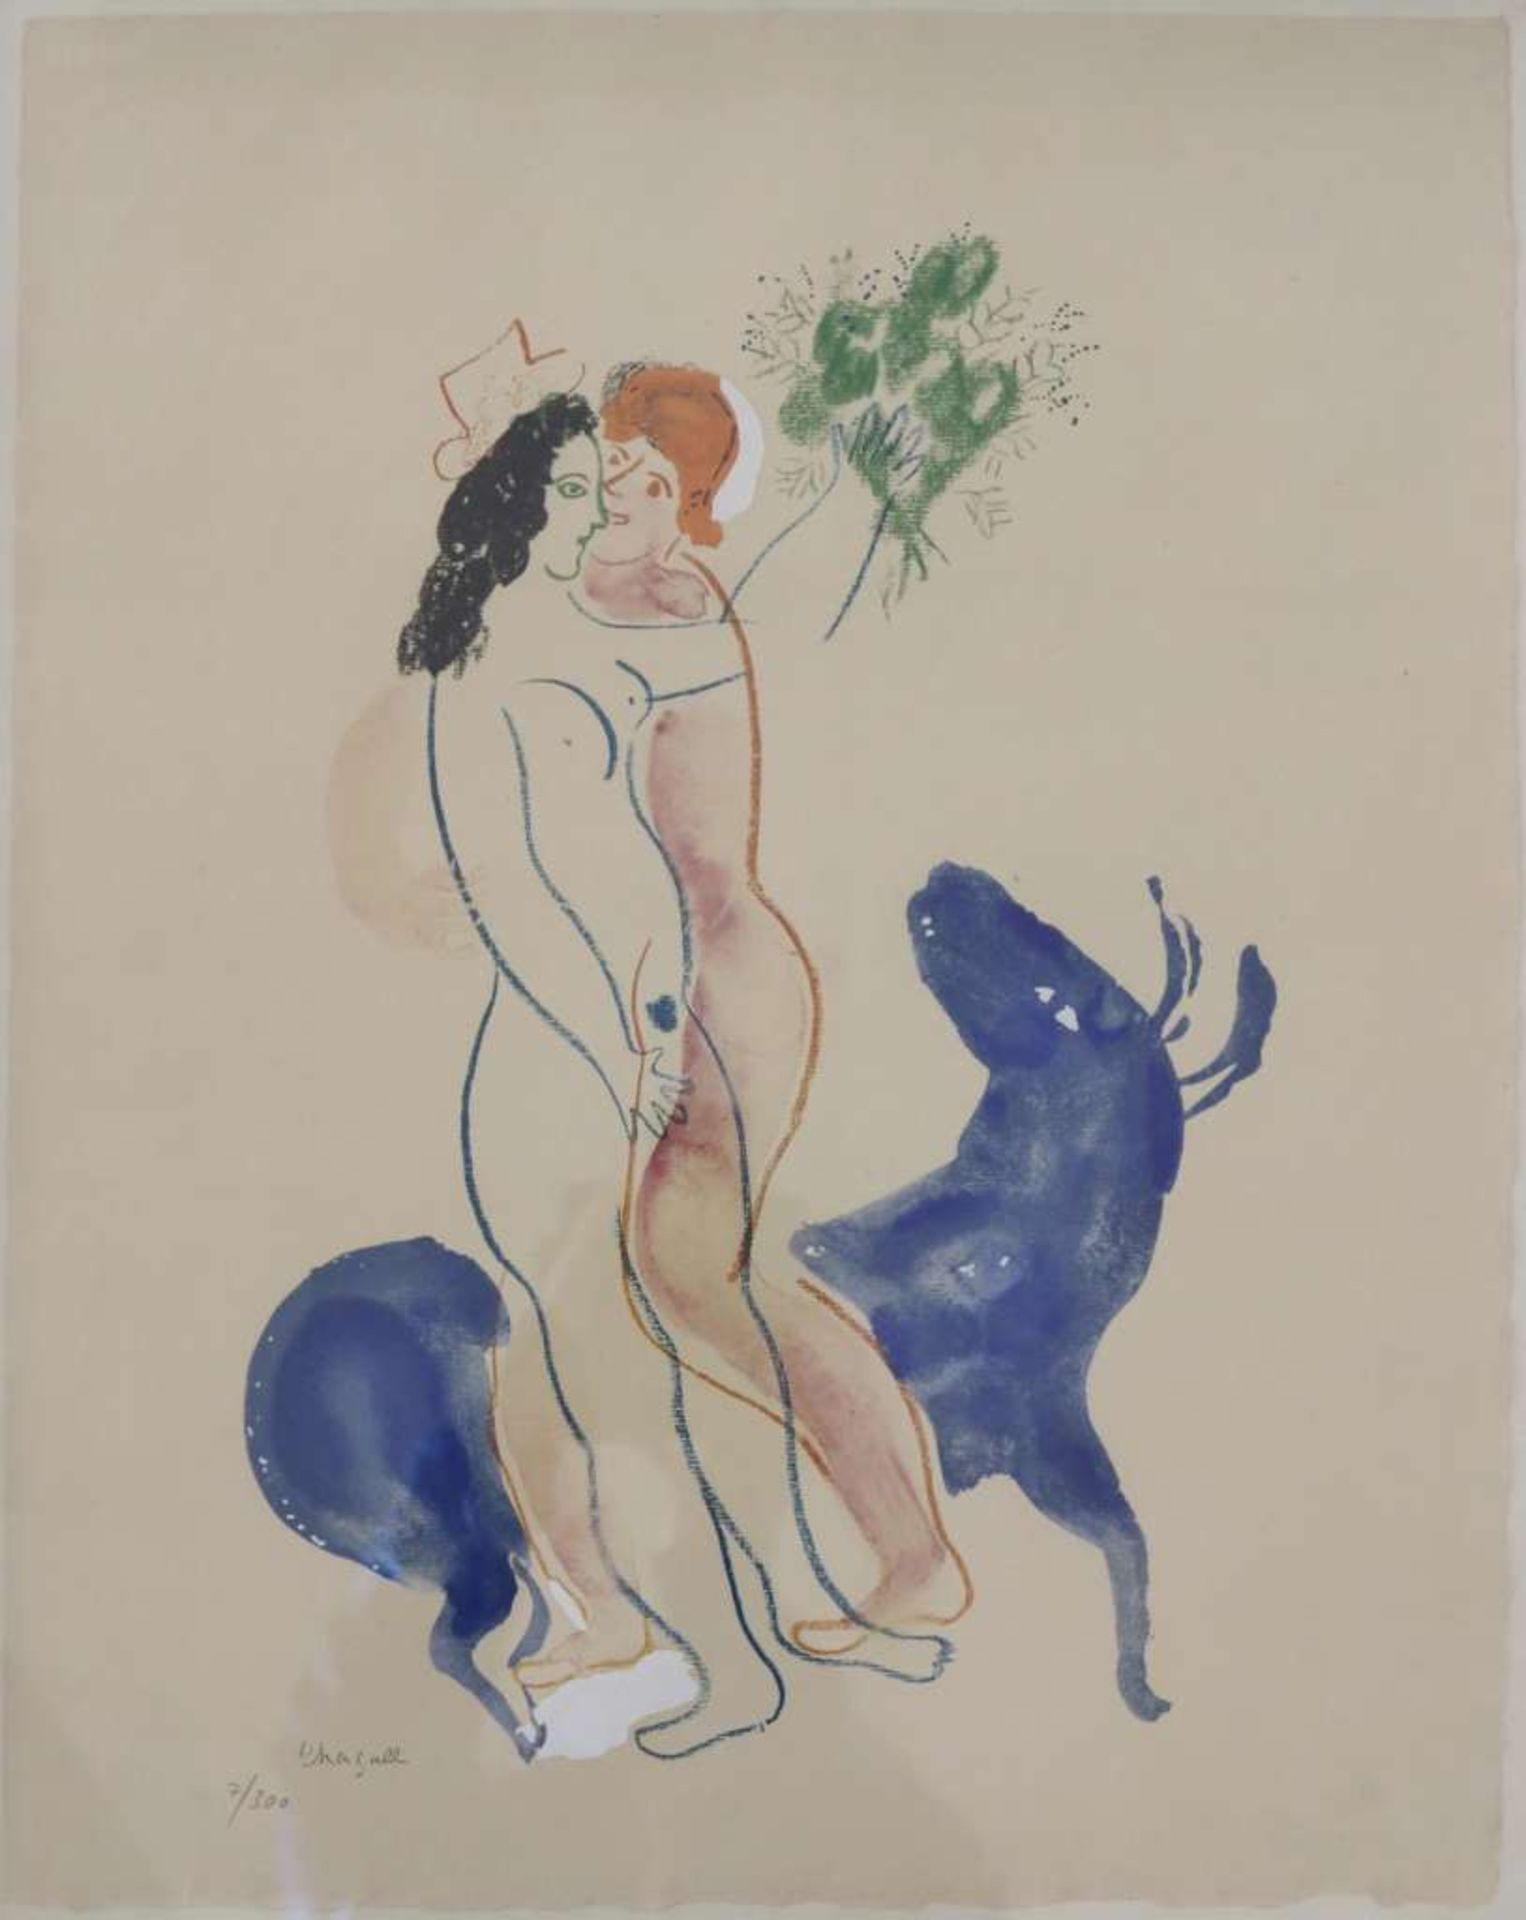 Marc CHAGALL (1887-1985), La bête bleue, Farblithographie, Ed. 7 / 300, Maße ca. 49,5 x 40 cm